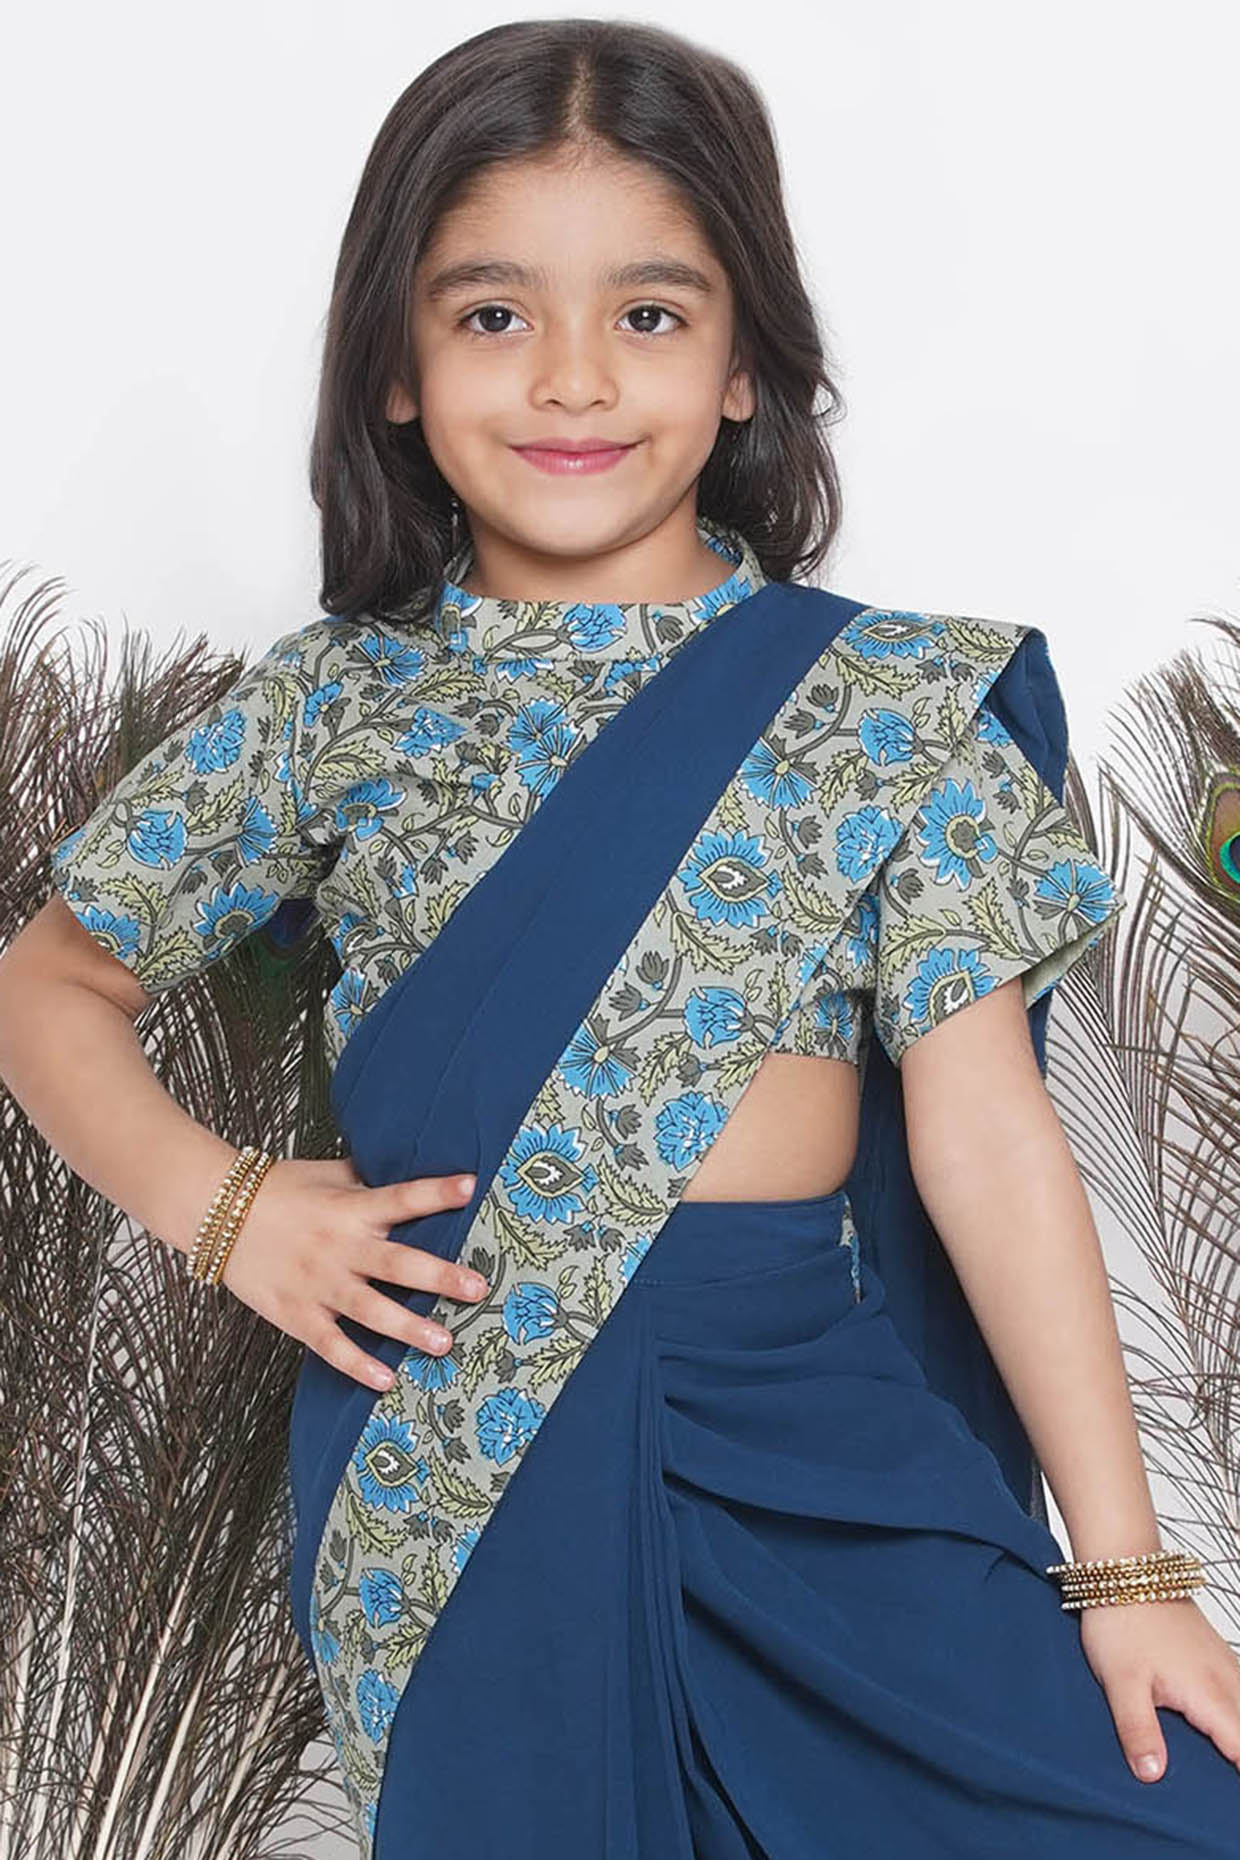 Saree dress hi-res stock photography and images - Alamy